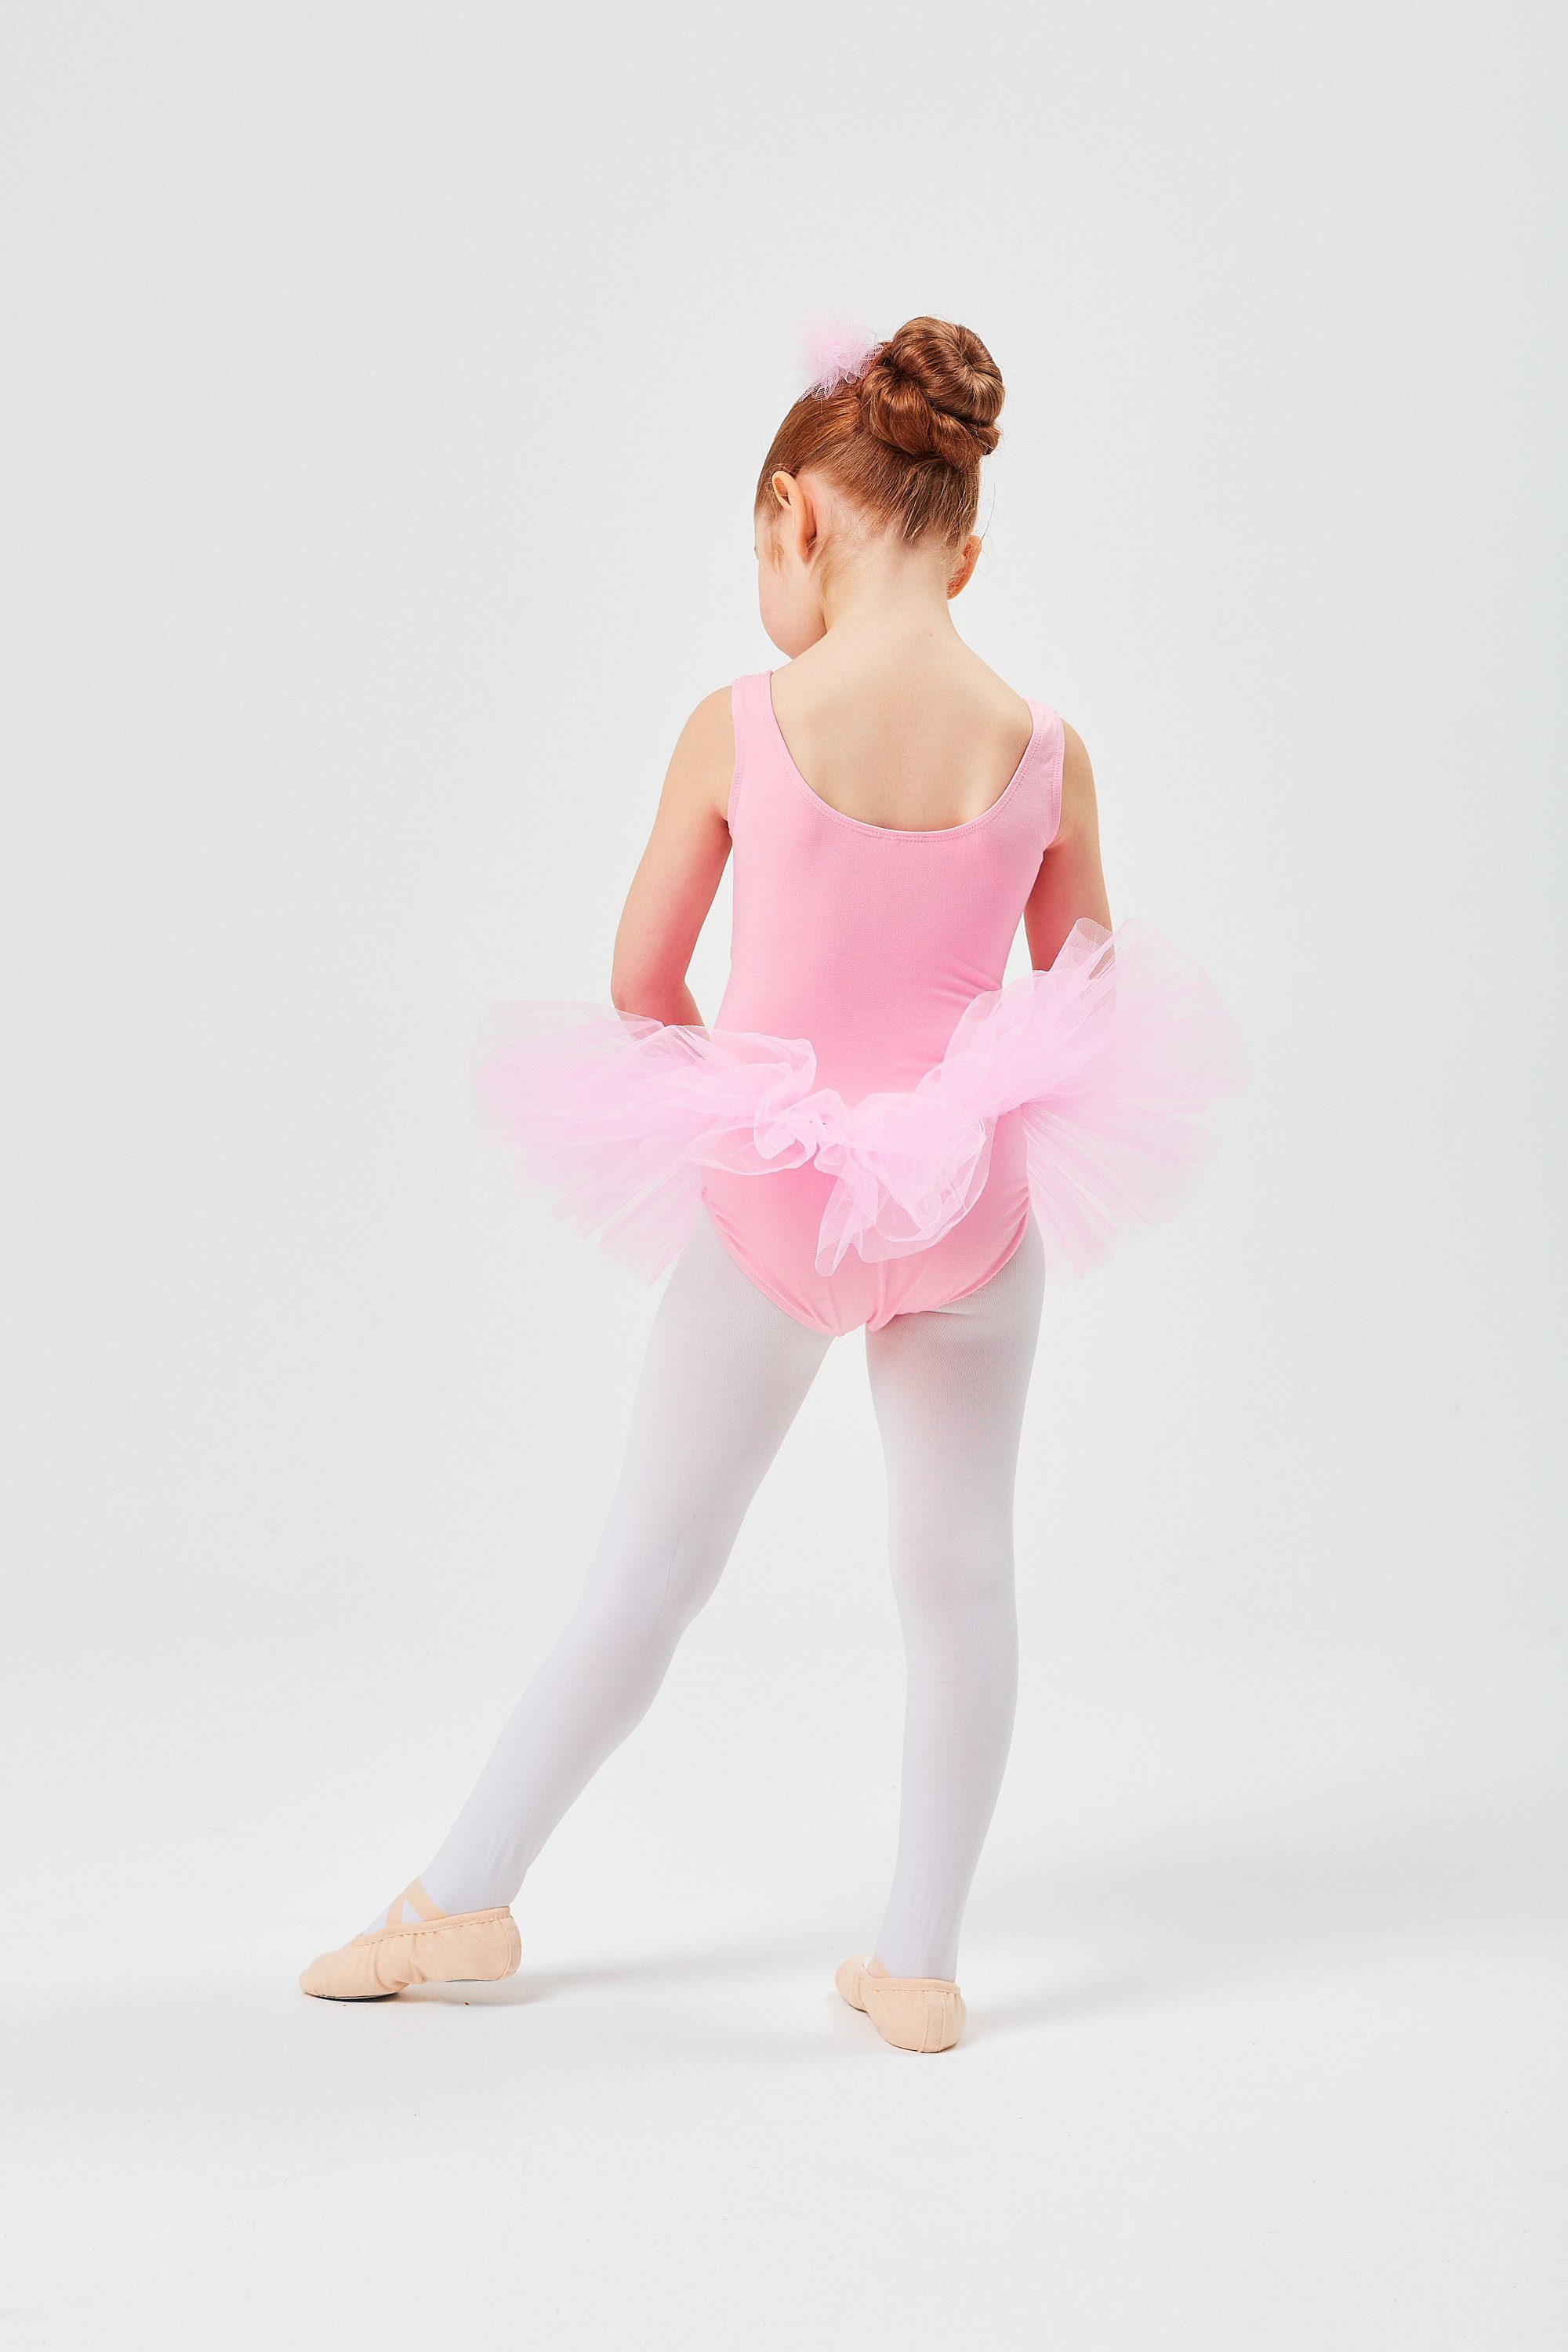 tanzmuster Tüllkleid Ballett aus Baumwolle, ärmellos Anabelle Tutu weicher Mädchen Ballettkleid rosa für